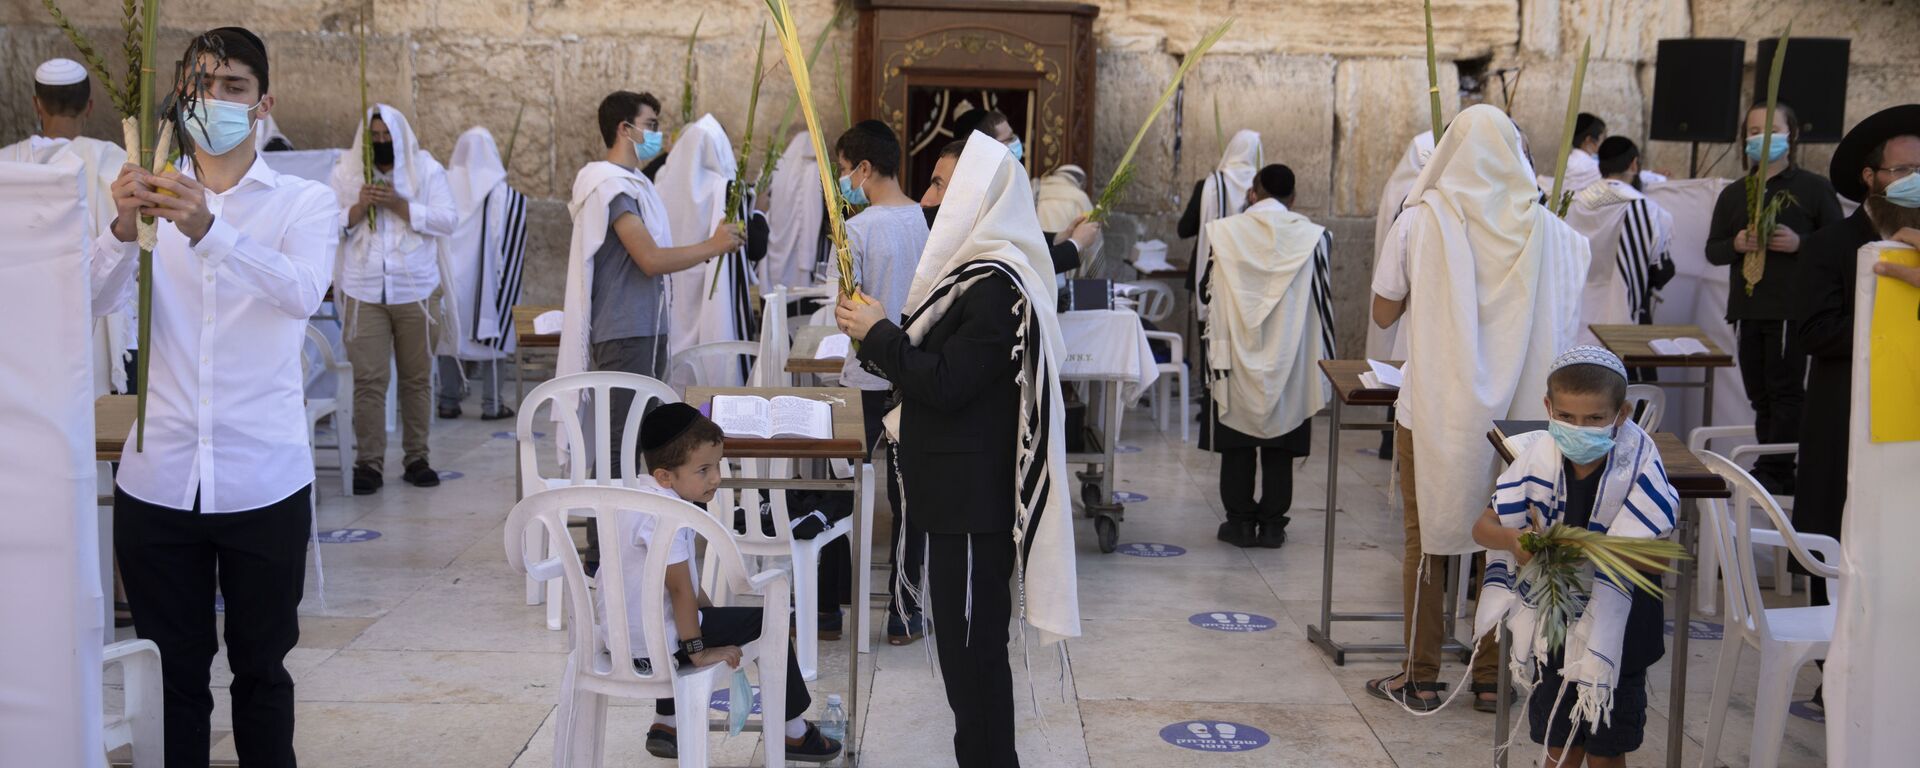 Пандемия COVID-19. Верующие евреи в масках во время праздника Суккот, старый город. Иерусалим, Израиль - Sputnik Грузия, 1920, 30.07.2021